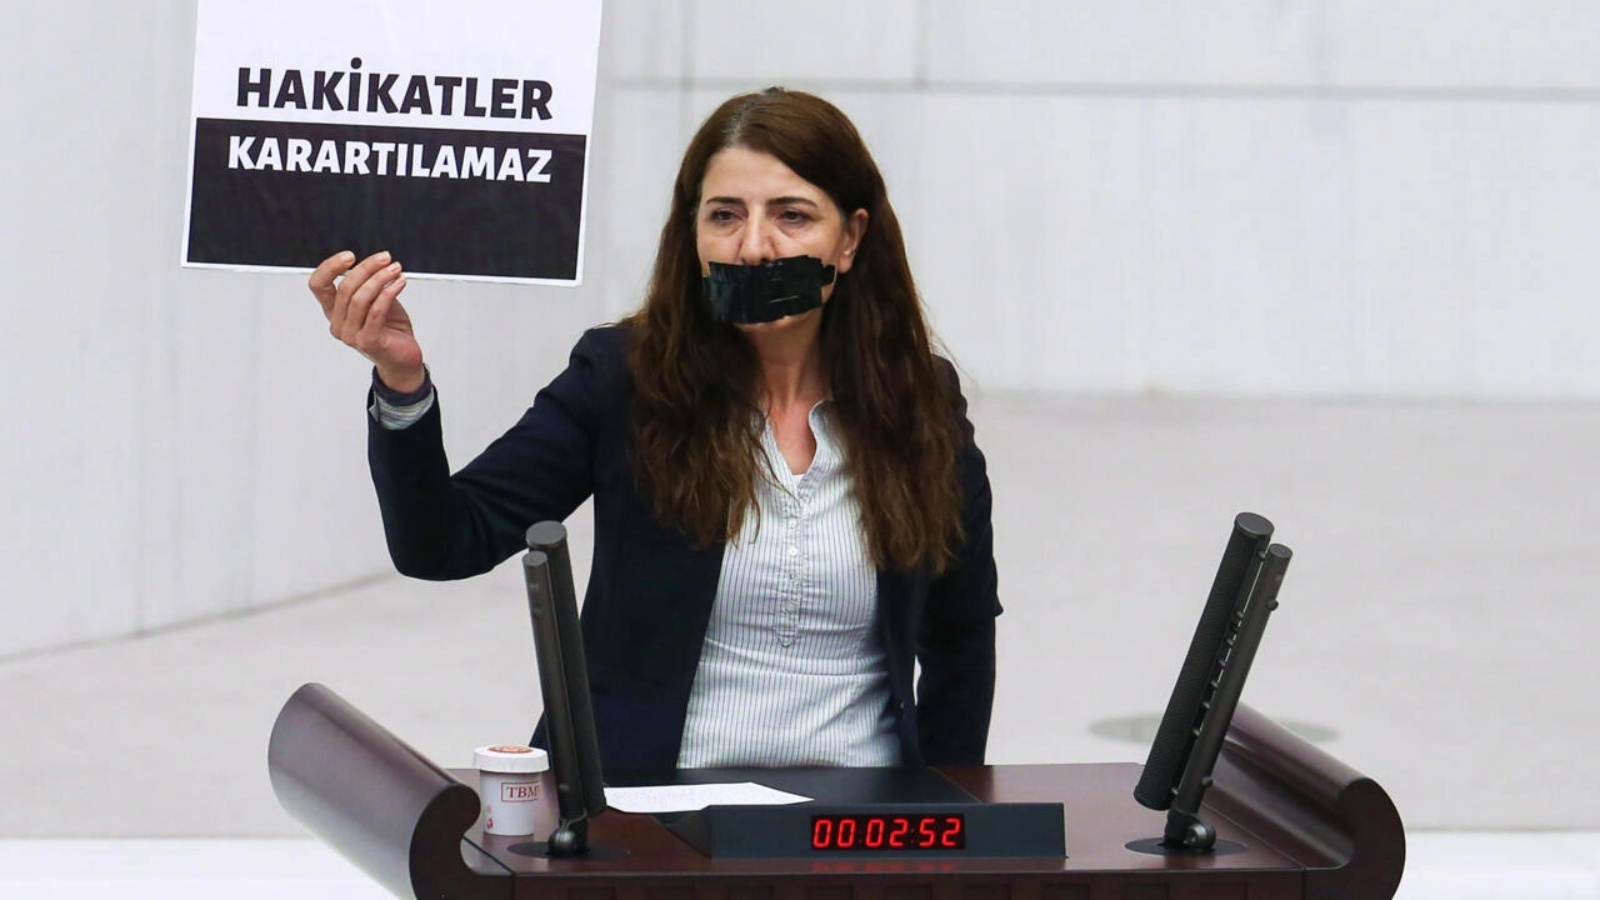 البرلمان التركي يقر قانوناً قد يفضي إلى سجن صحافيين أو مستخدمي وسائل التواصل الاجتماعي